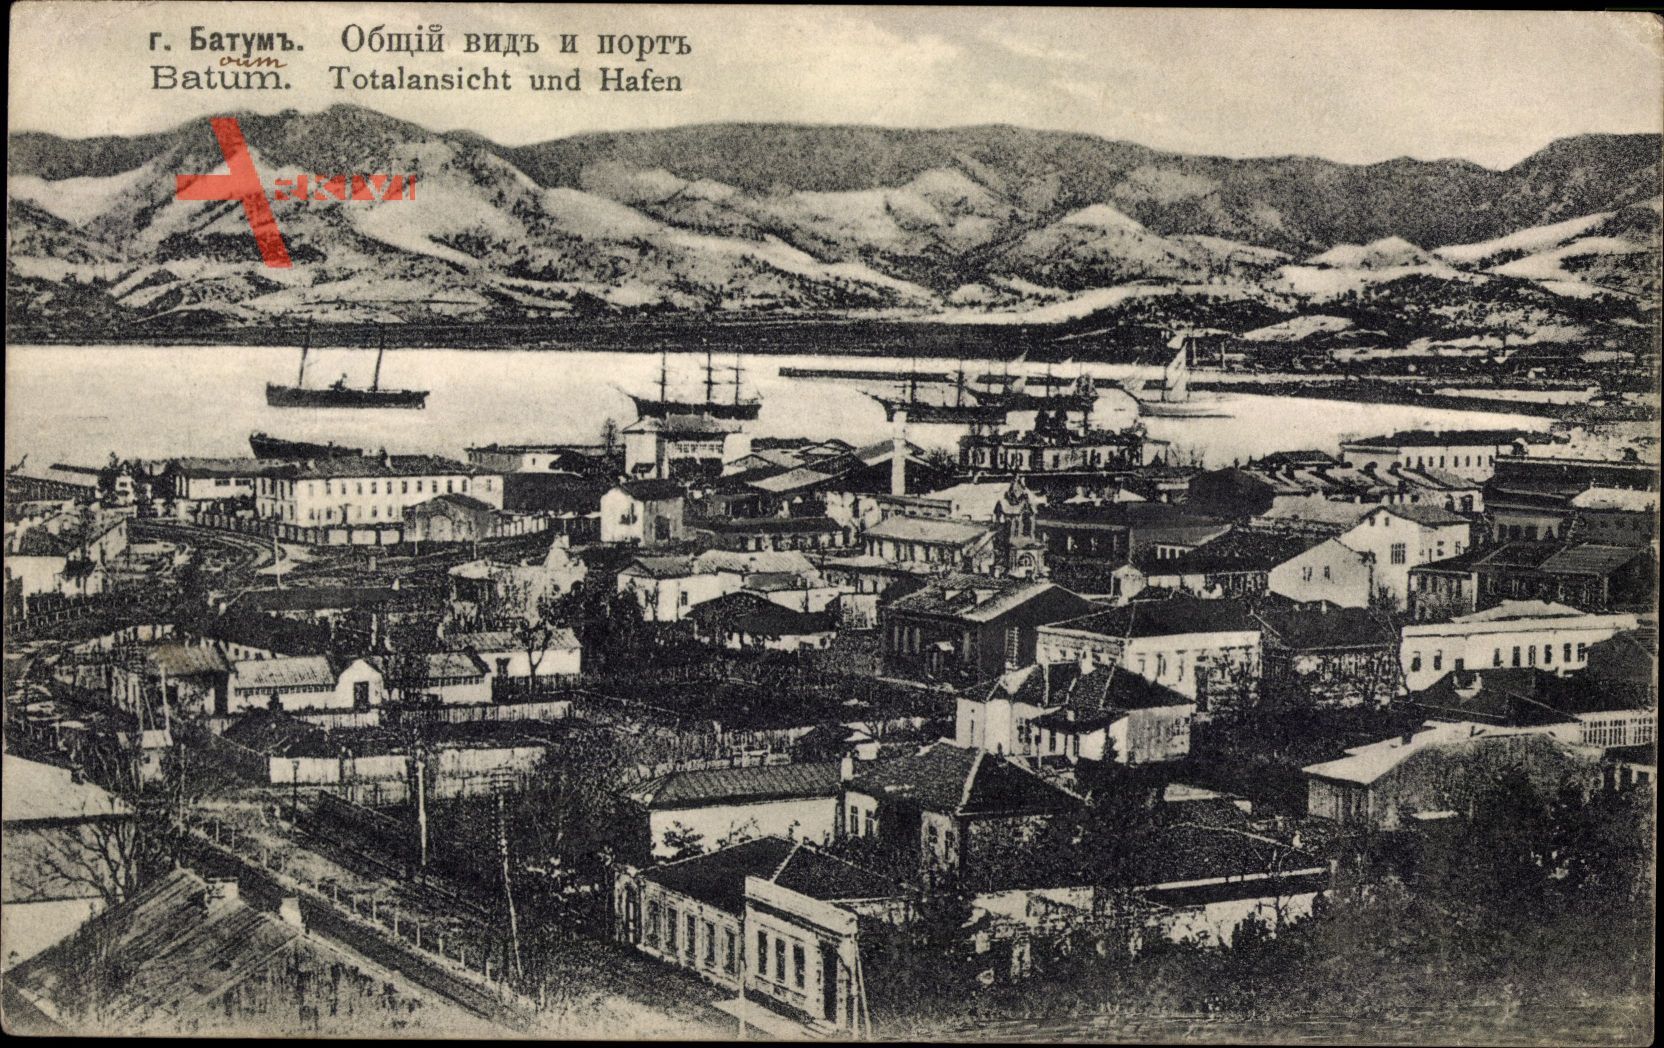 Batum Georgien, Totalansicht mit Hafen, Schiffe, Hausdächer